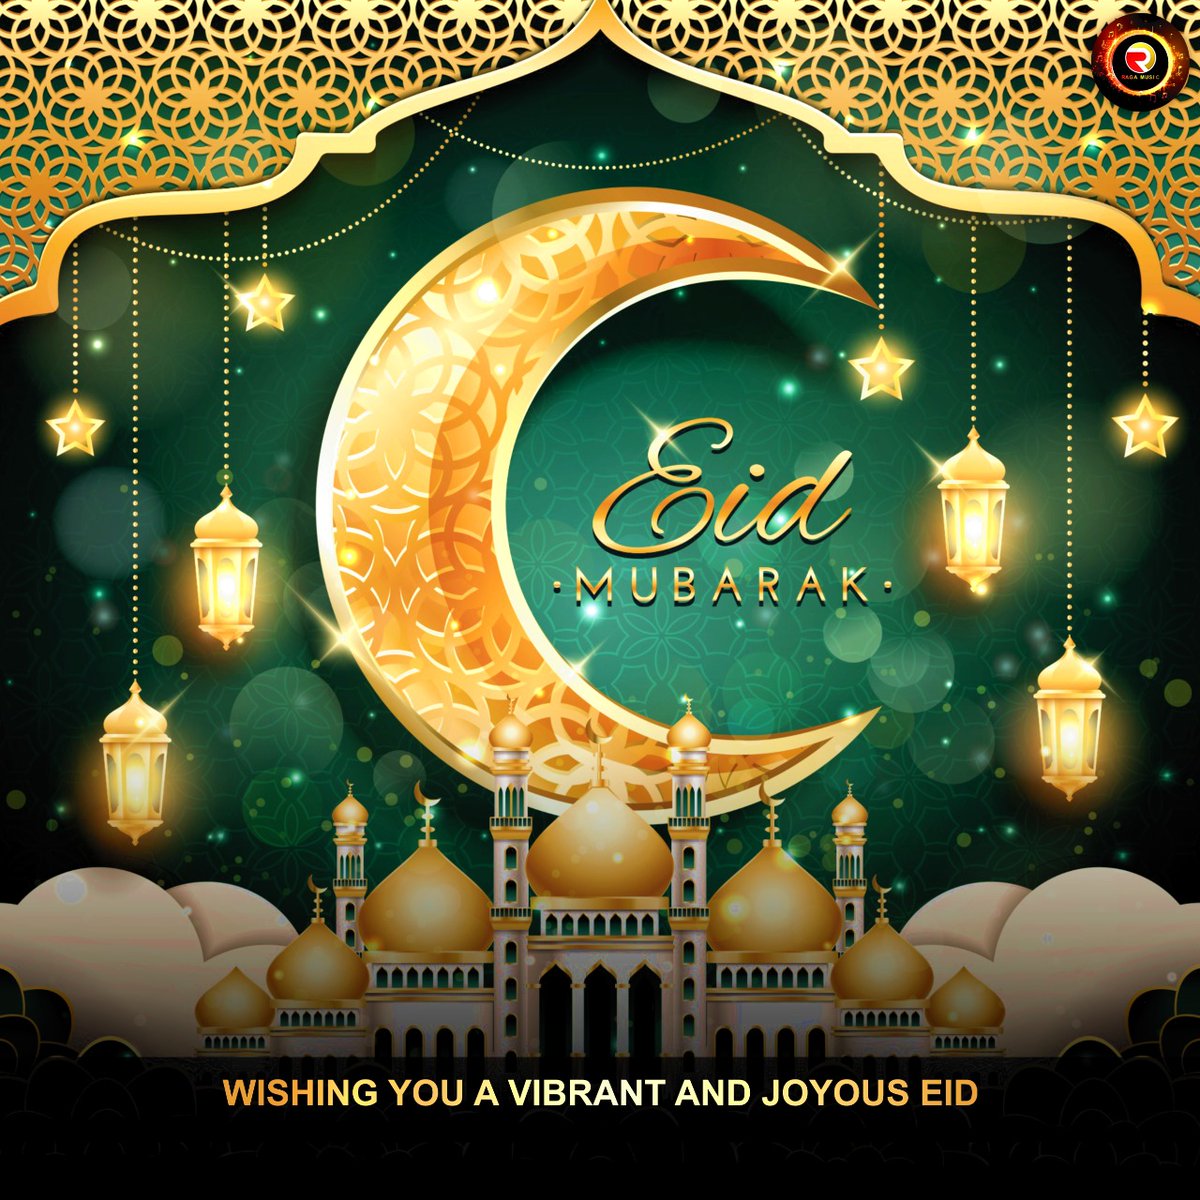 Wish You All Eid Mubarak 2022 ! 

#eidmubarak #eid #eid2022 #prosperity #peace 
#festival #blessings #halfmoon #eidi #eidgifts 
#eidoutfits #eiddiet #eidrecipes #eidrecipe 
#stayhealthy #stayhealthy #eathealthy #ragamusic